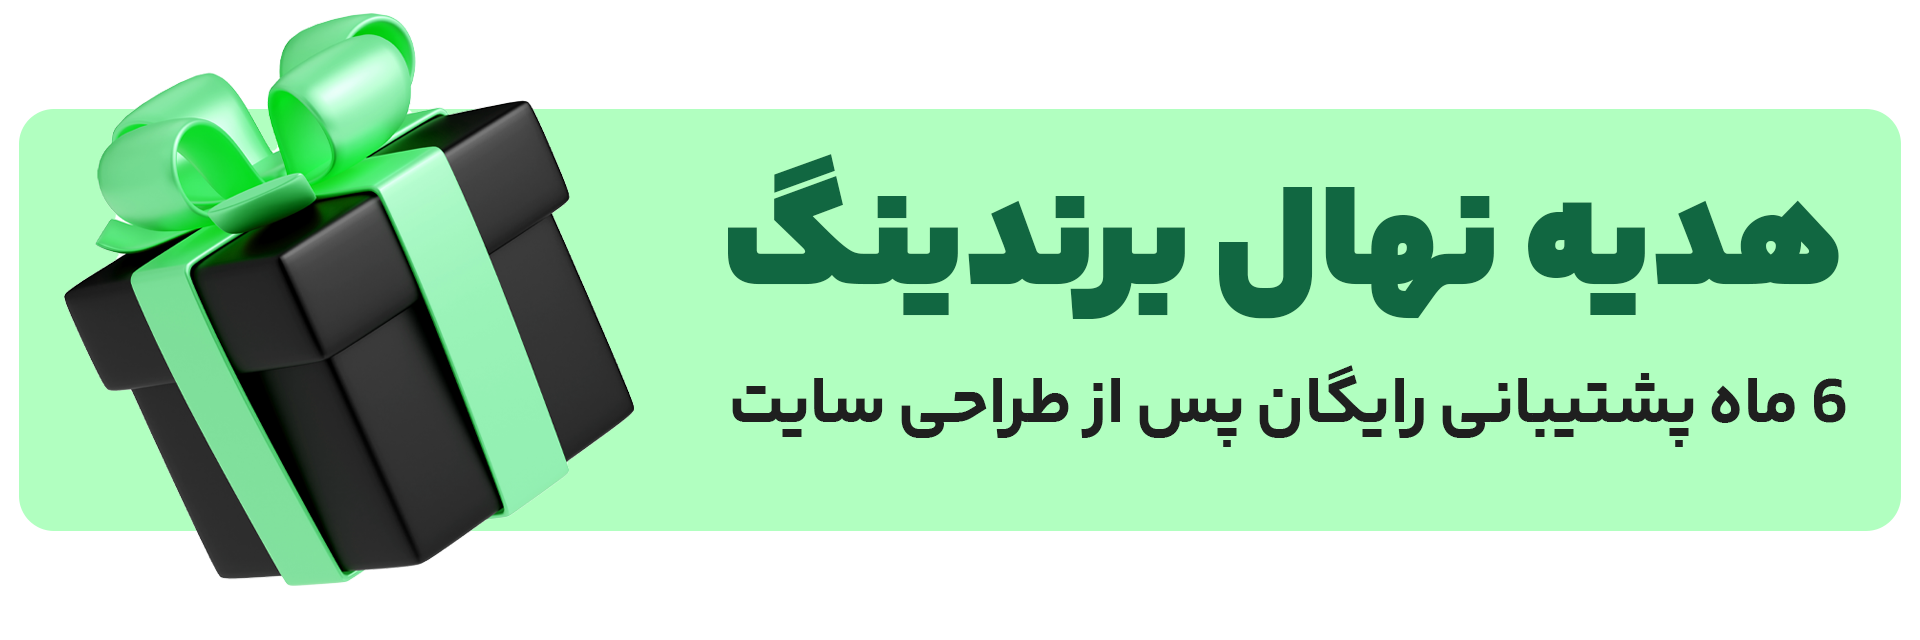 پشتیبانی طراحی سایت شرکتی در تهران